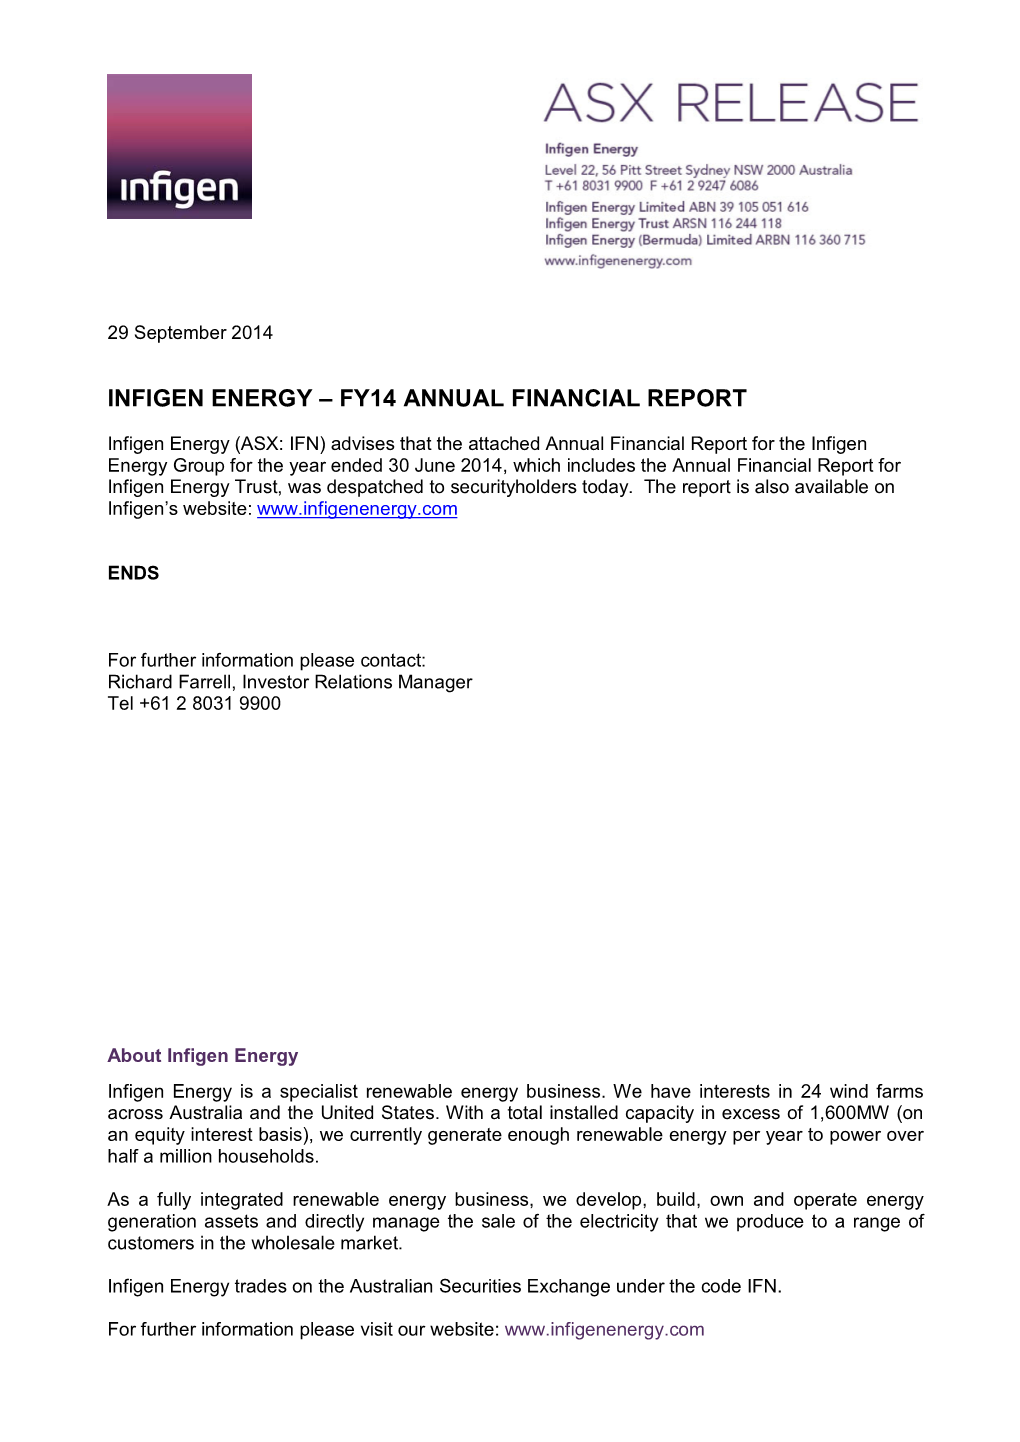 Infigen Energy – Fy14 Annual Financial Report